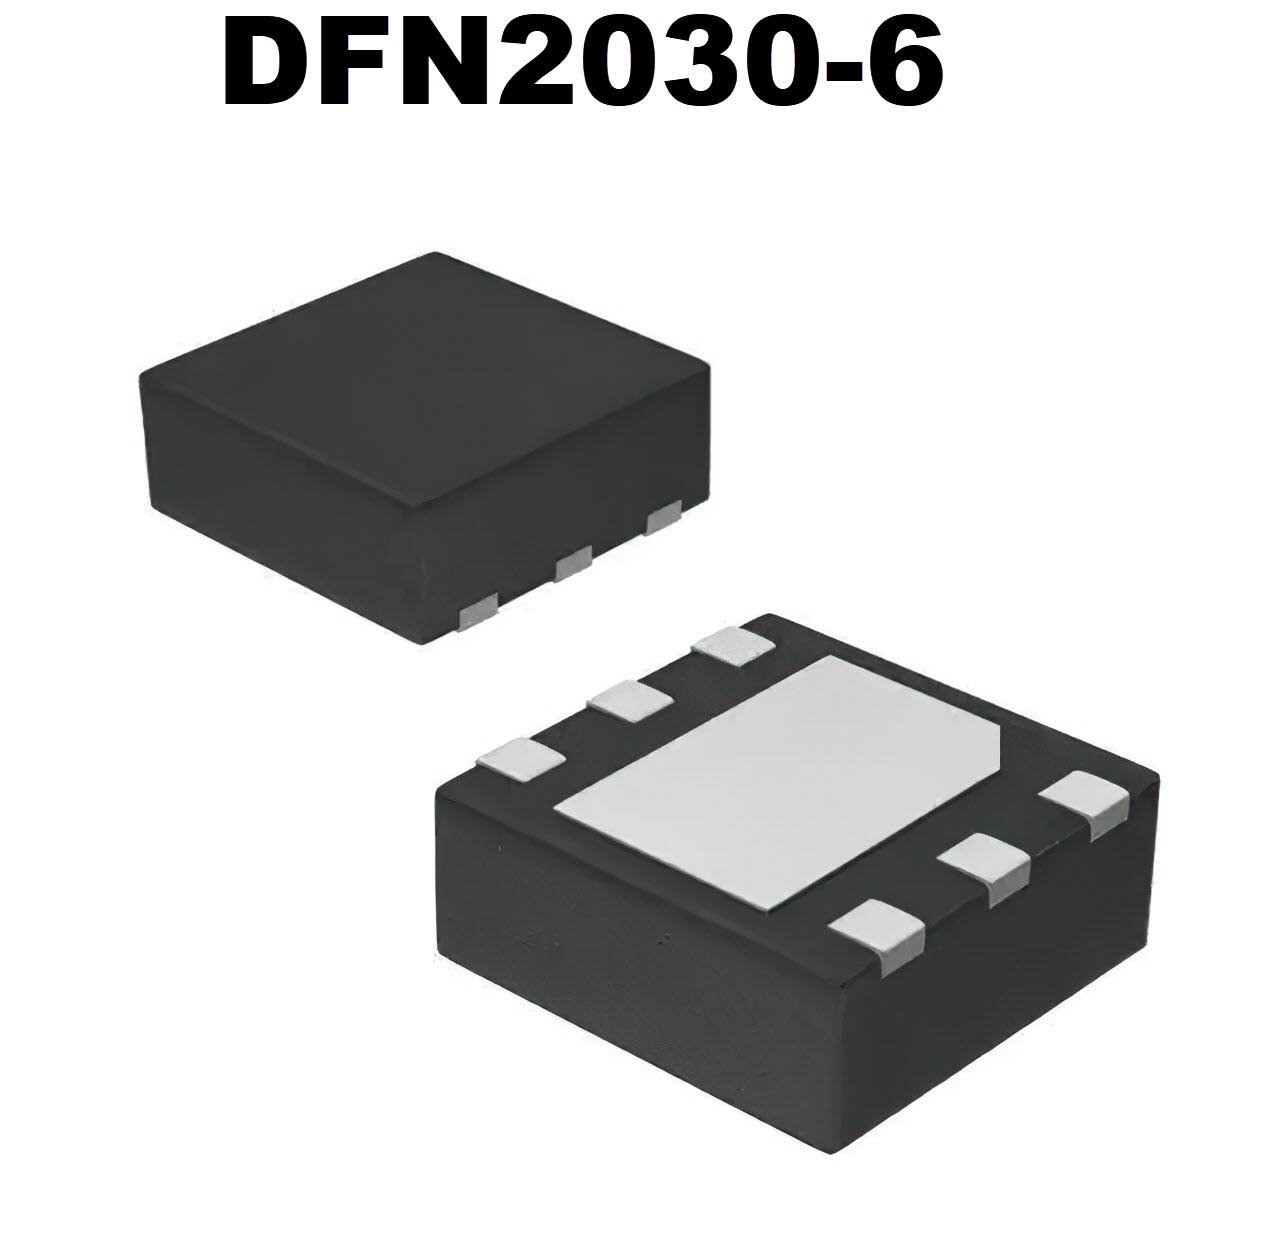 DFN2020-6